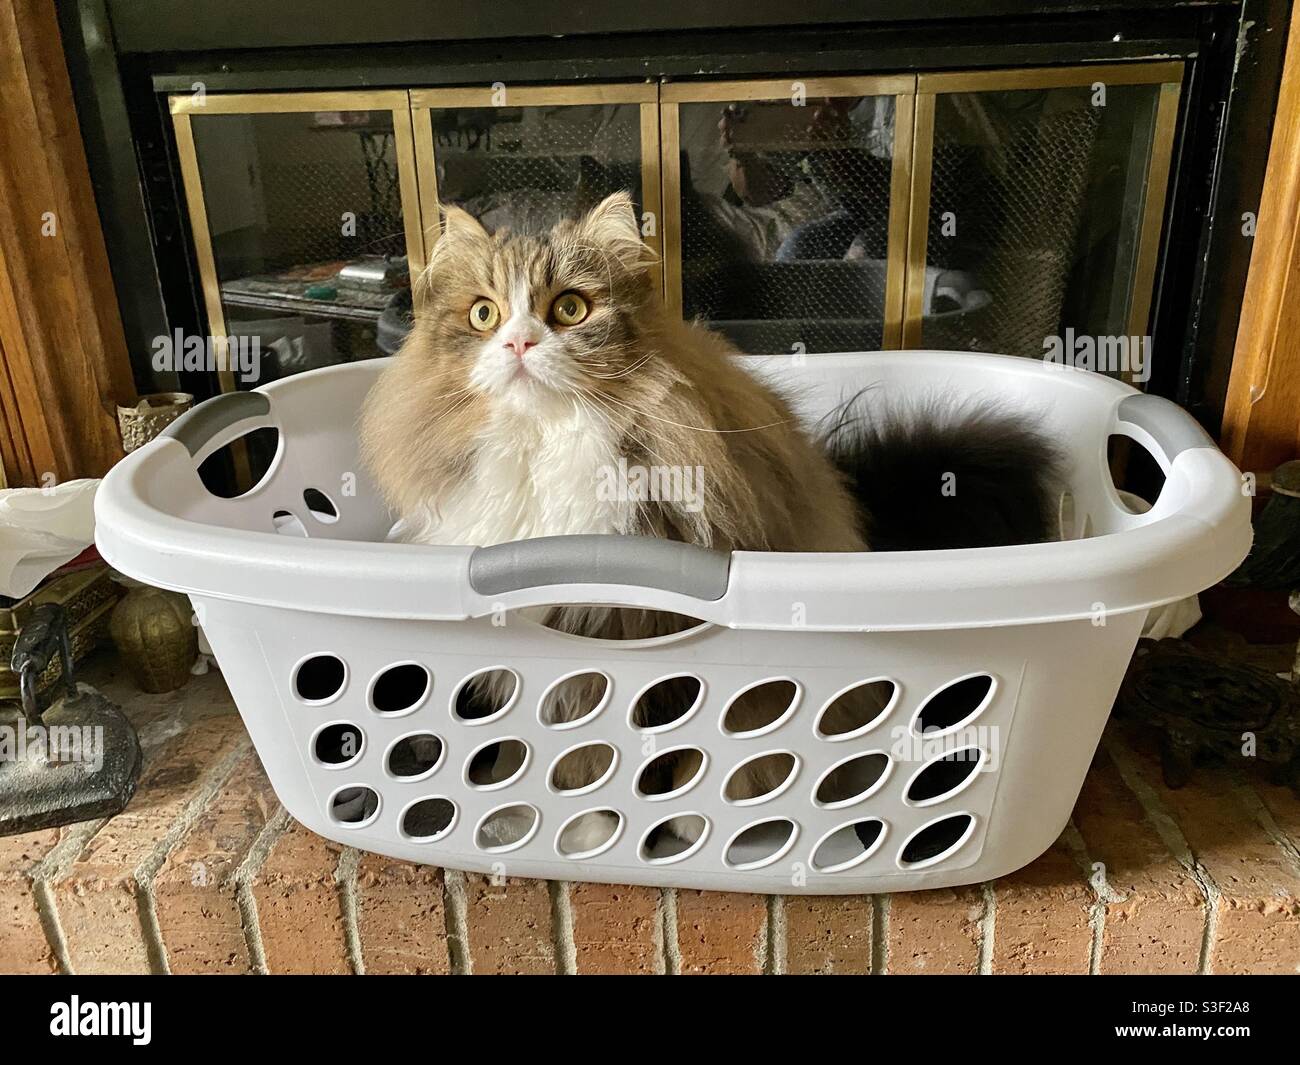 Katze im Wäschekorb am Herd Stockfotografie - Alamy